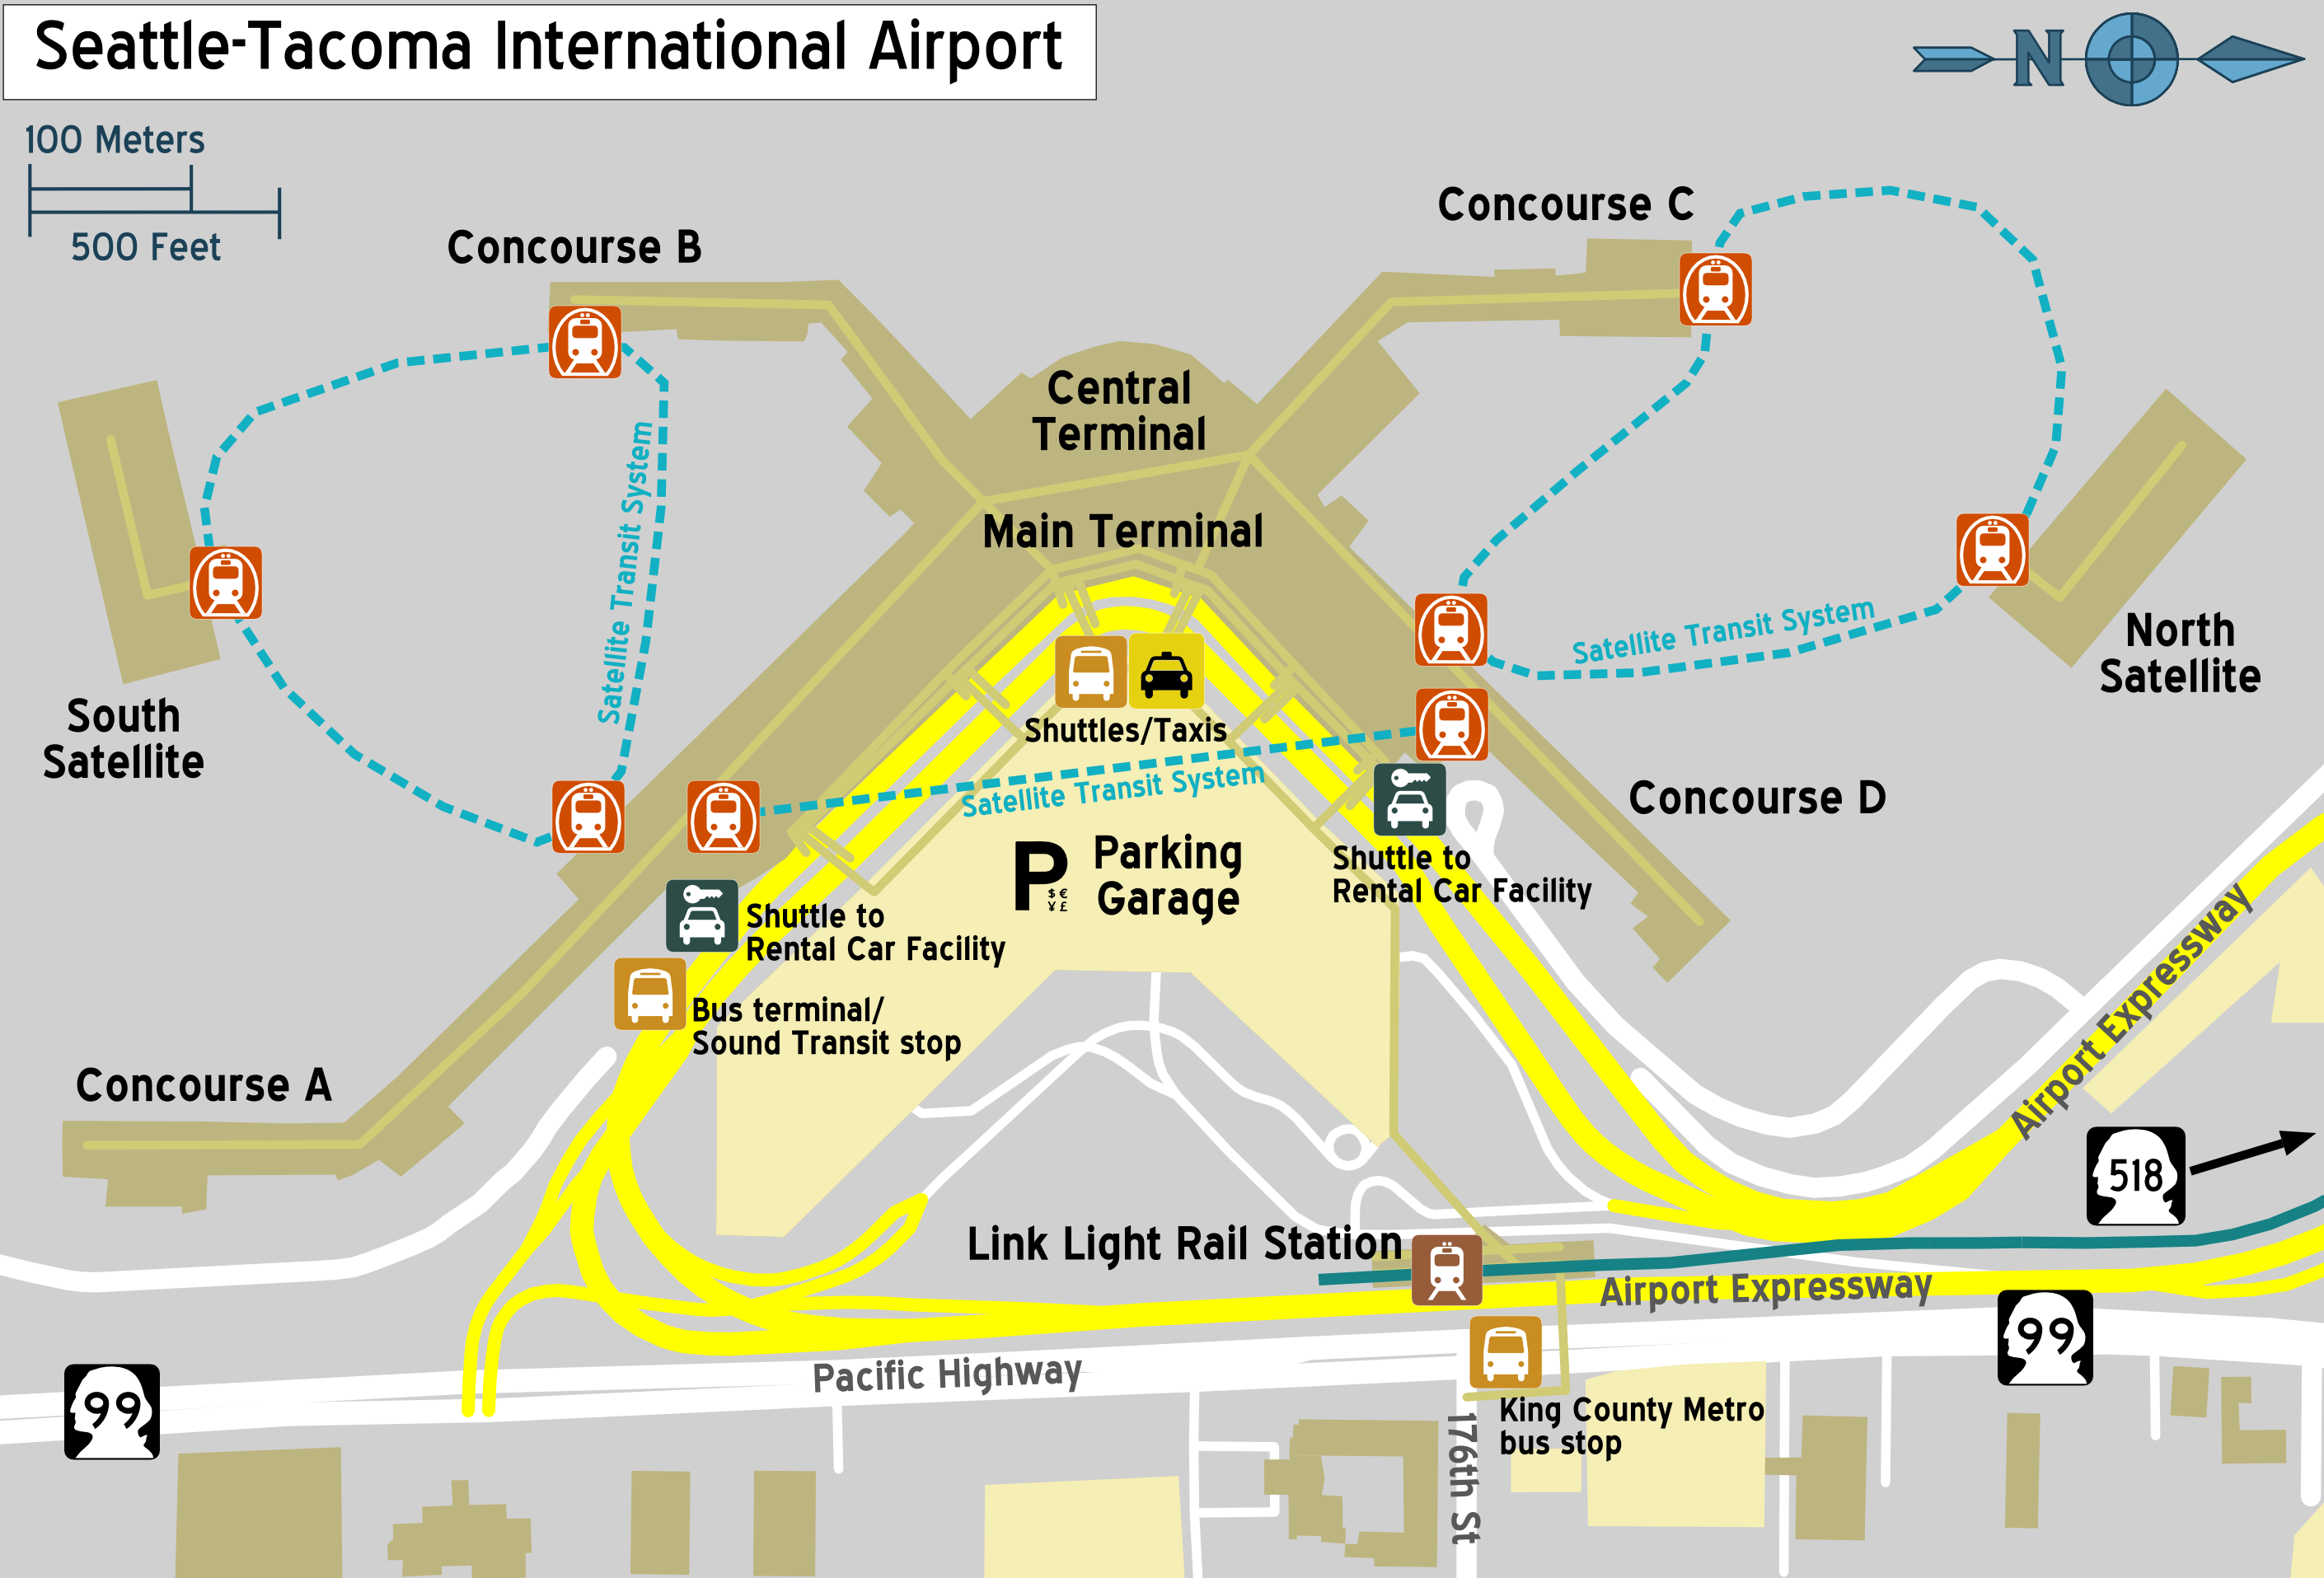 sea airport terminal map Satellite Transit System Wikiwand sea airport terminal map